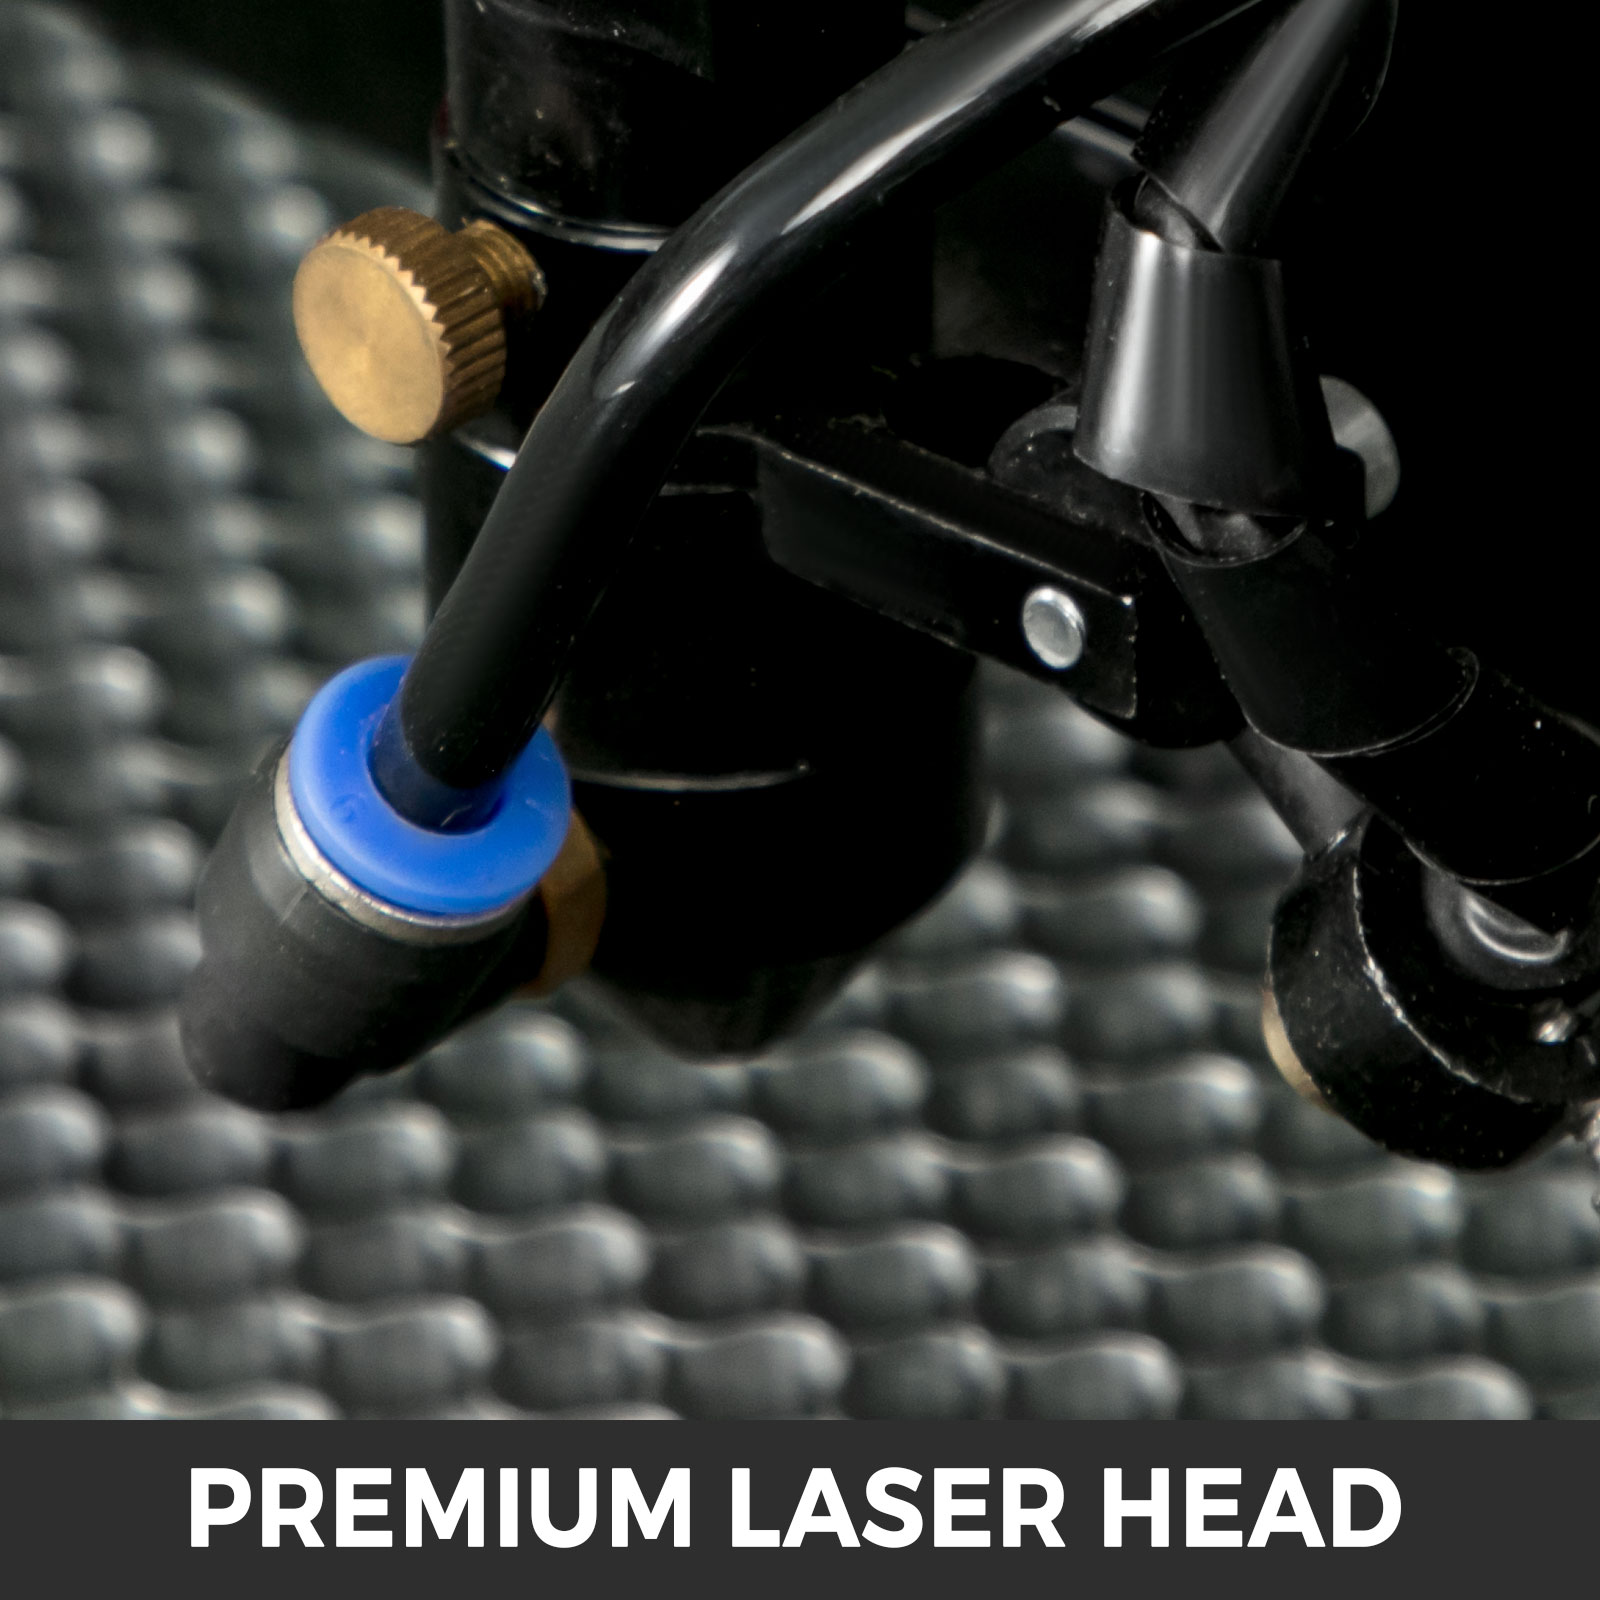 Nouveau Graveur/Découpeur Laser avec Ecran Couleur 700*500mm 80W, Tube Laser CO2